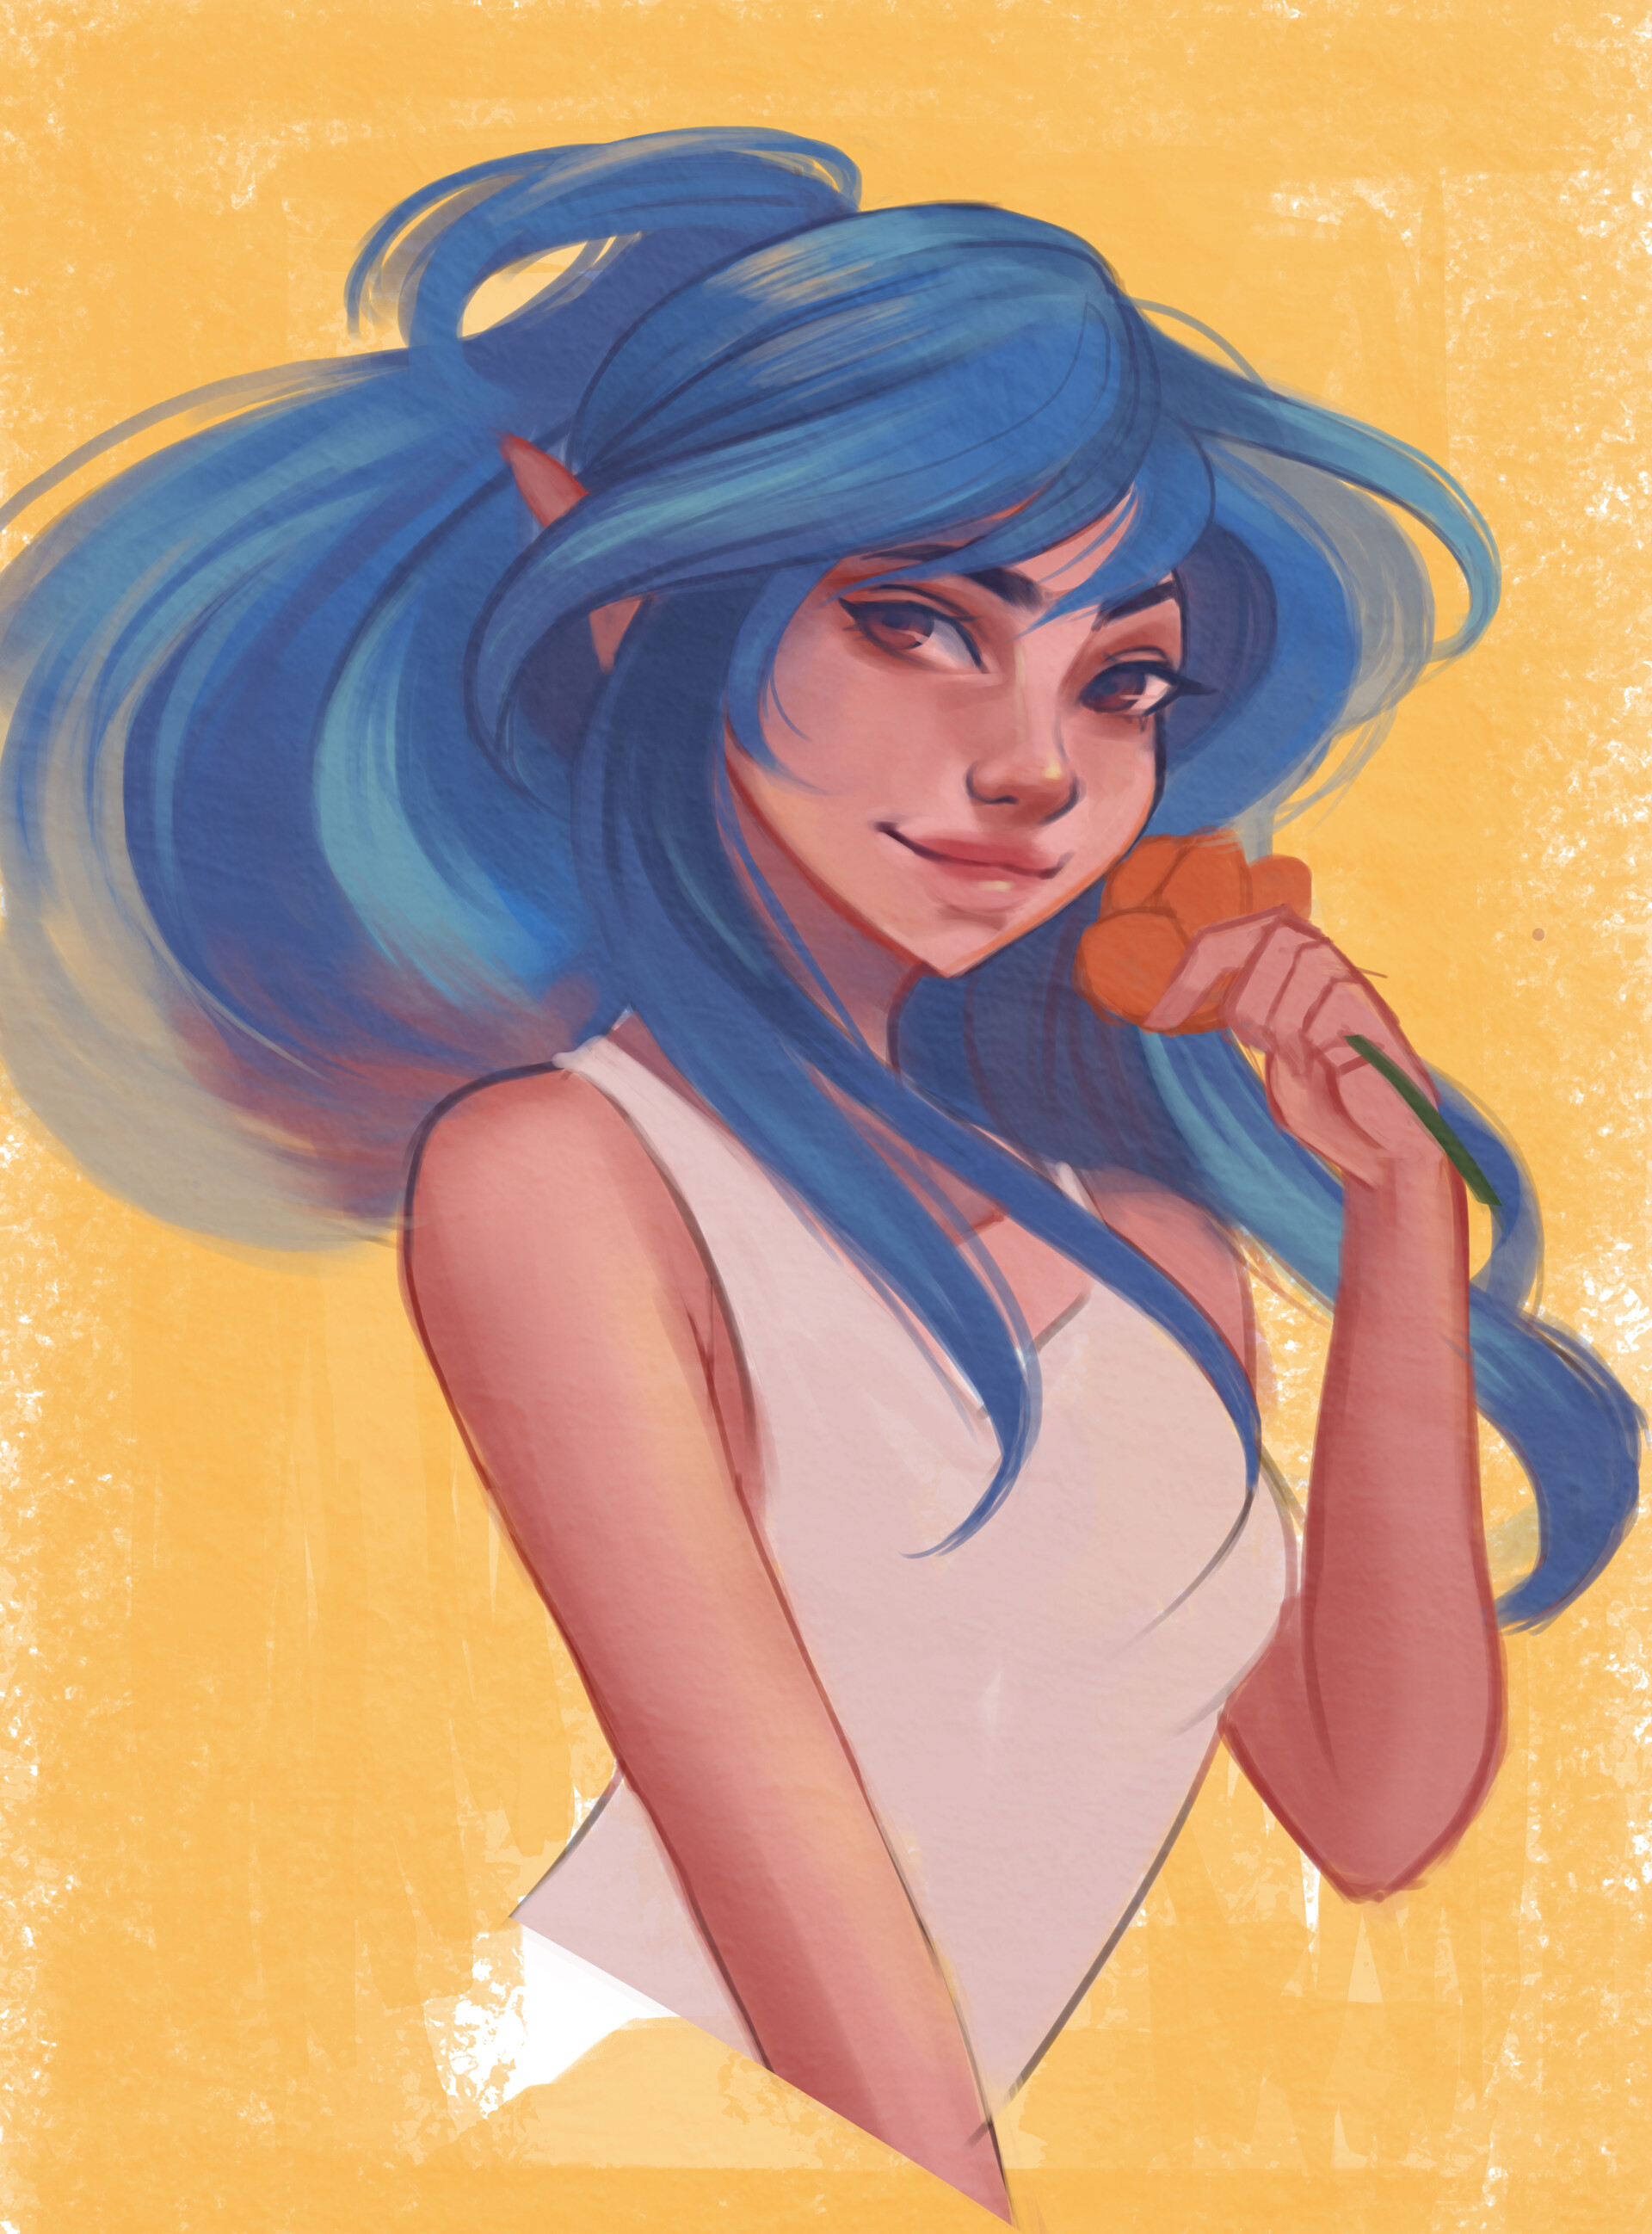 blue haired elf girl